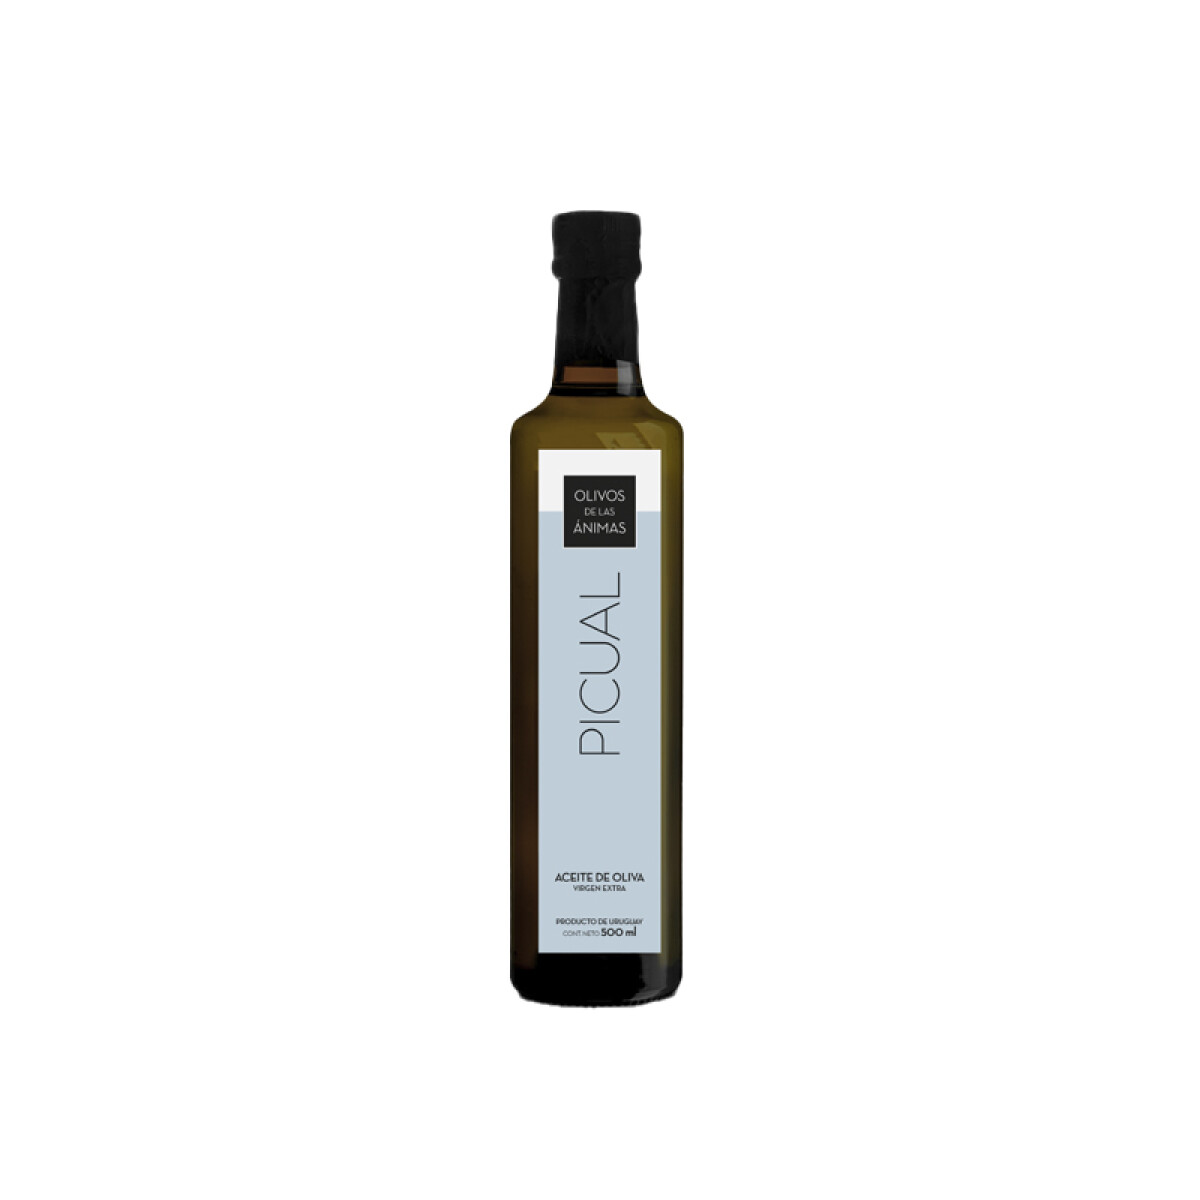 Aceite de oliva picual Olivos de las Animas 500ml 